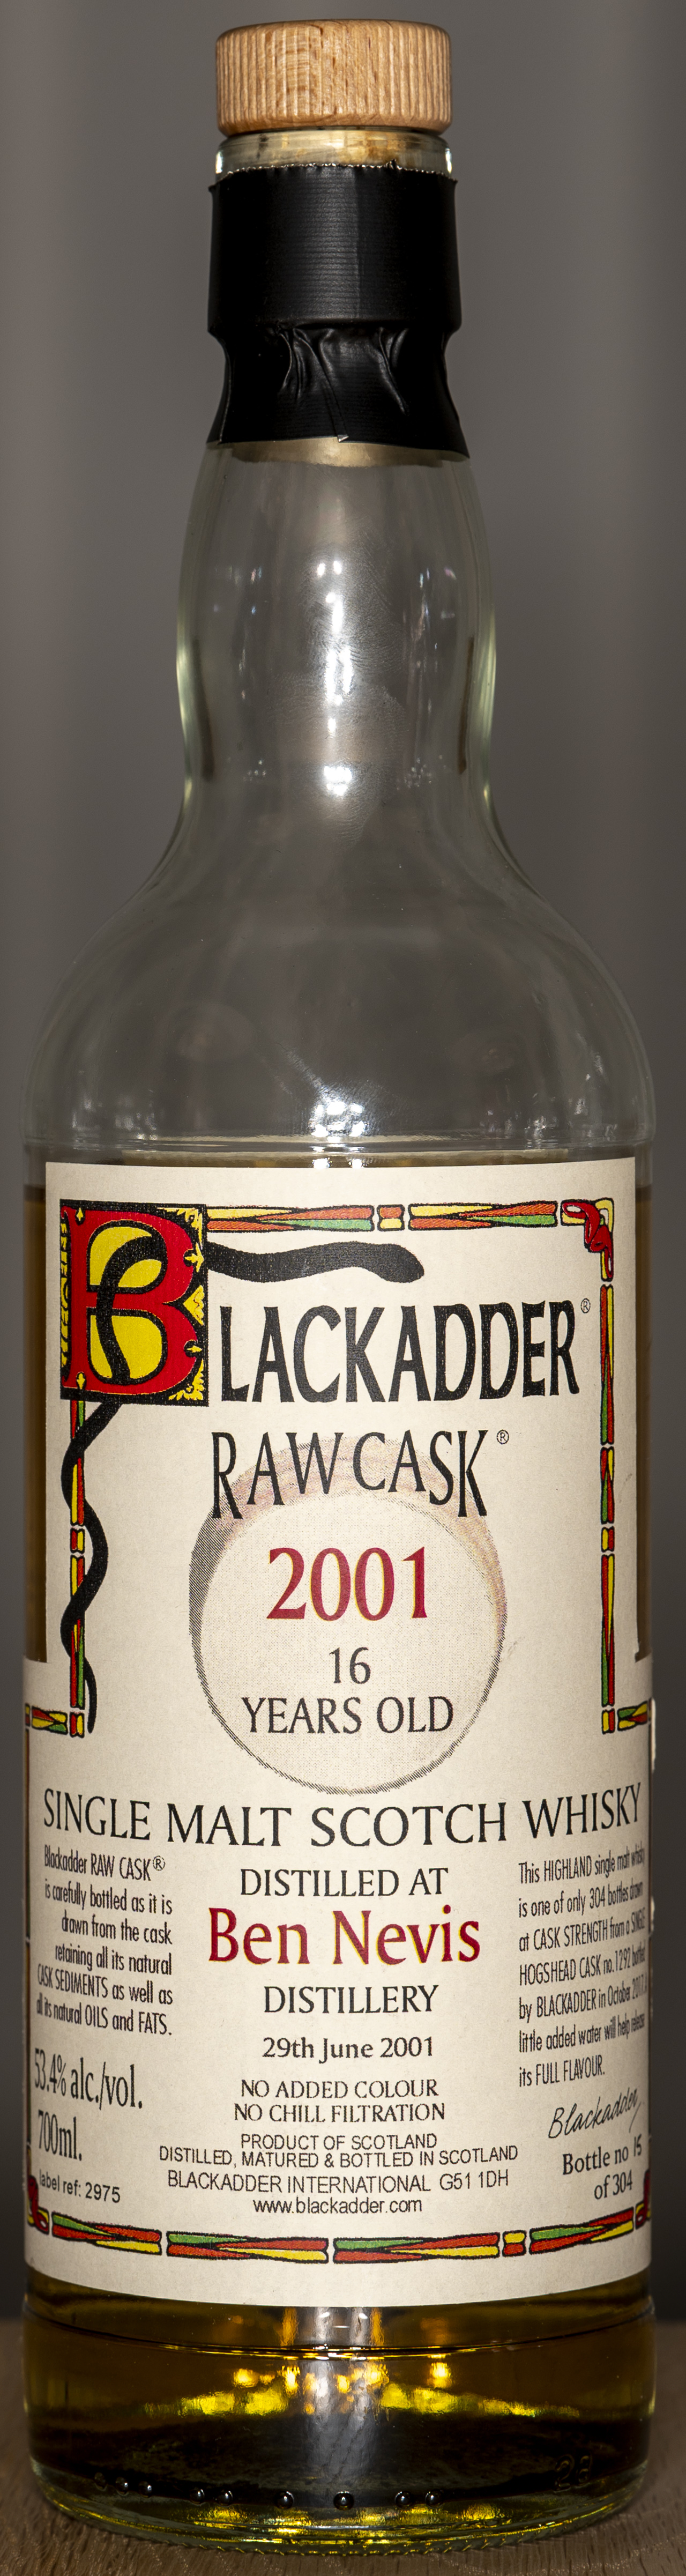 Billede: DSC_4764 - Blackadder Raw Cask 2001 16 years Ben Nevis - bottle front.jpg